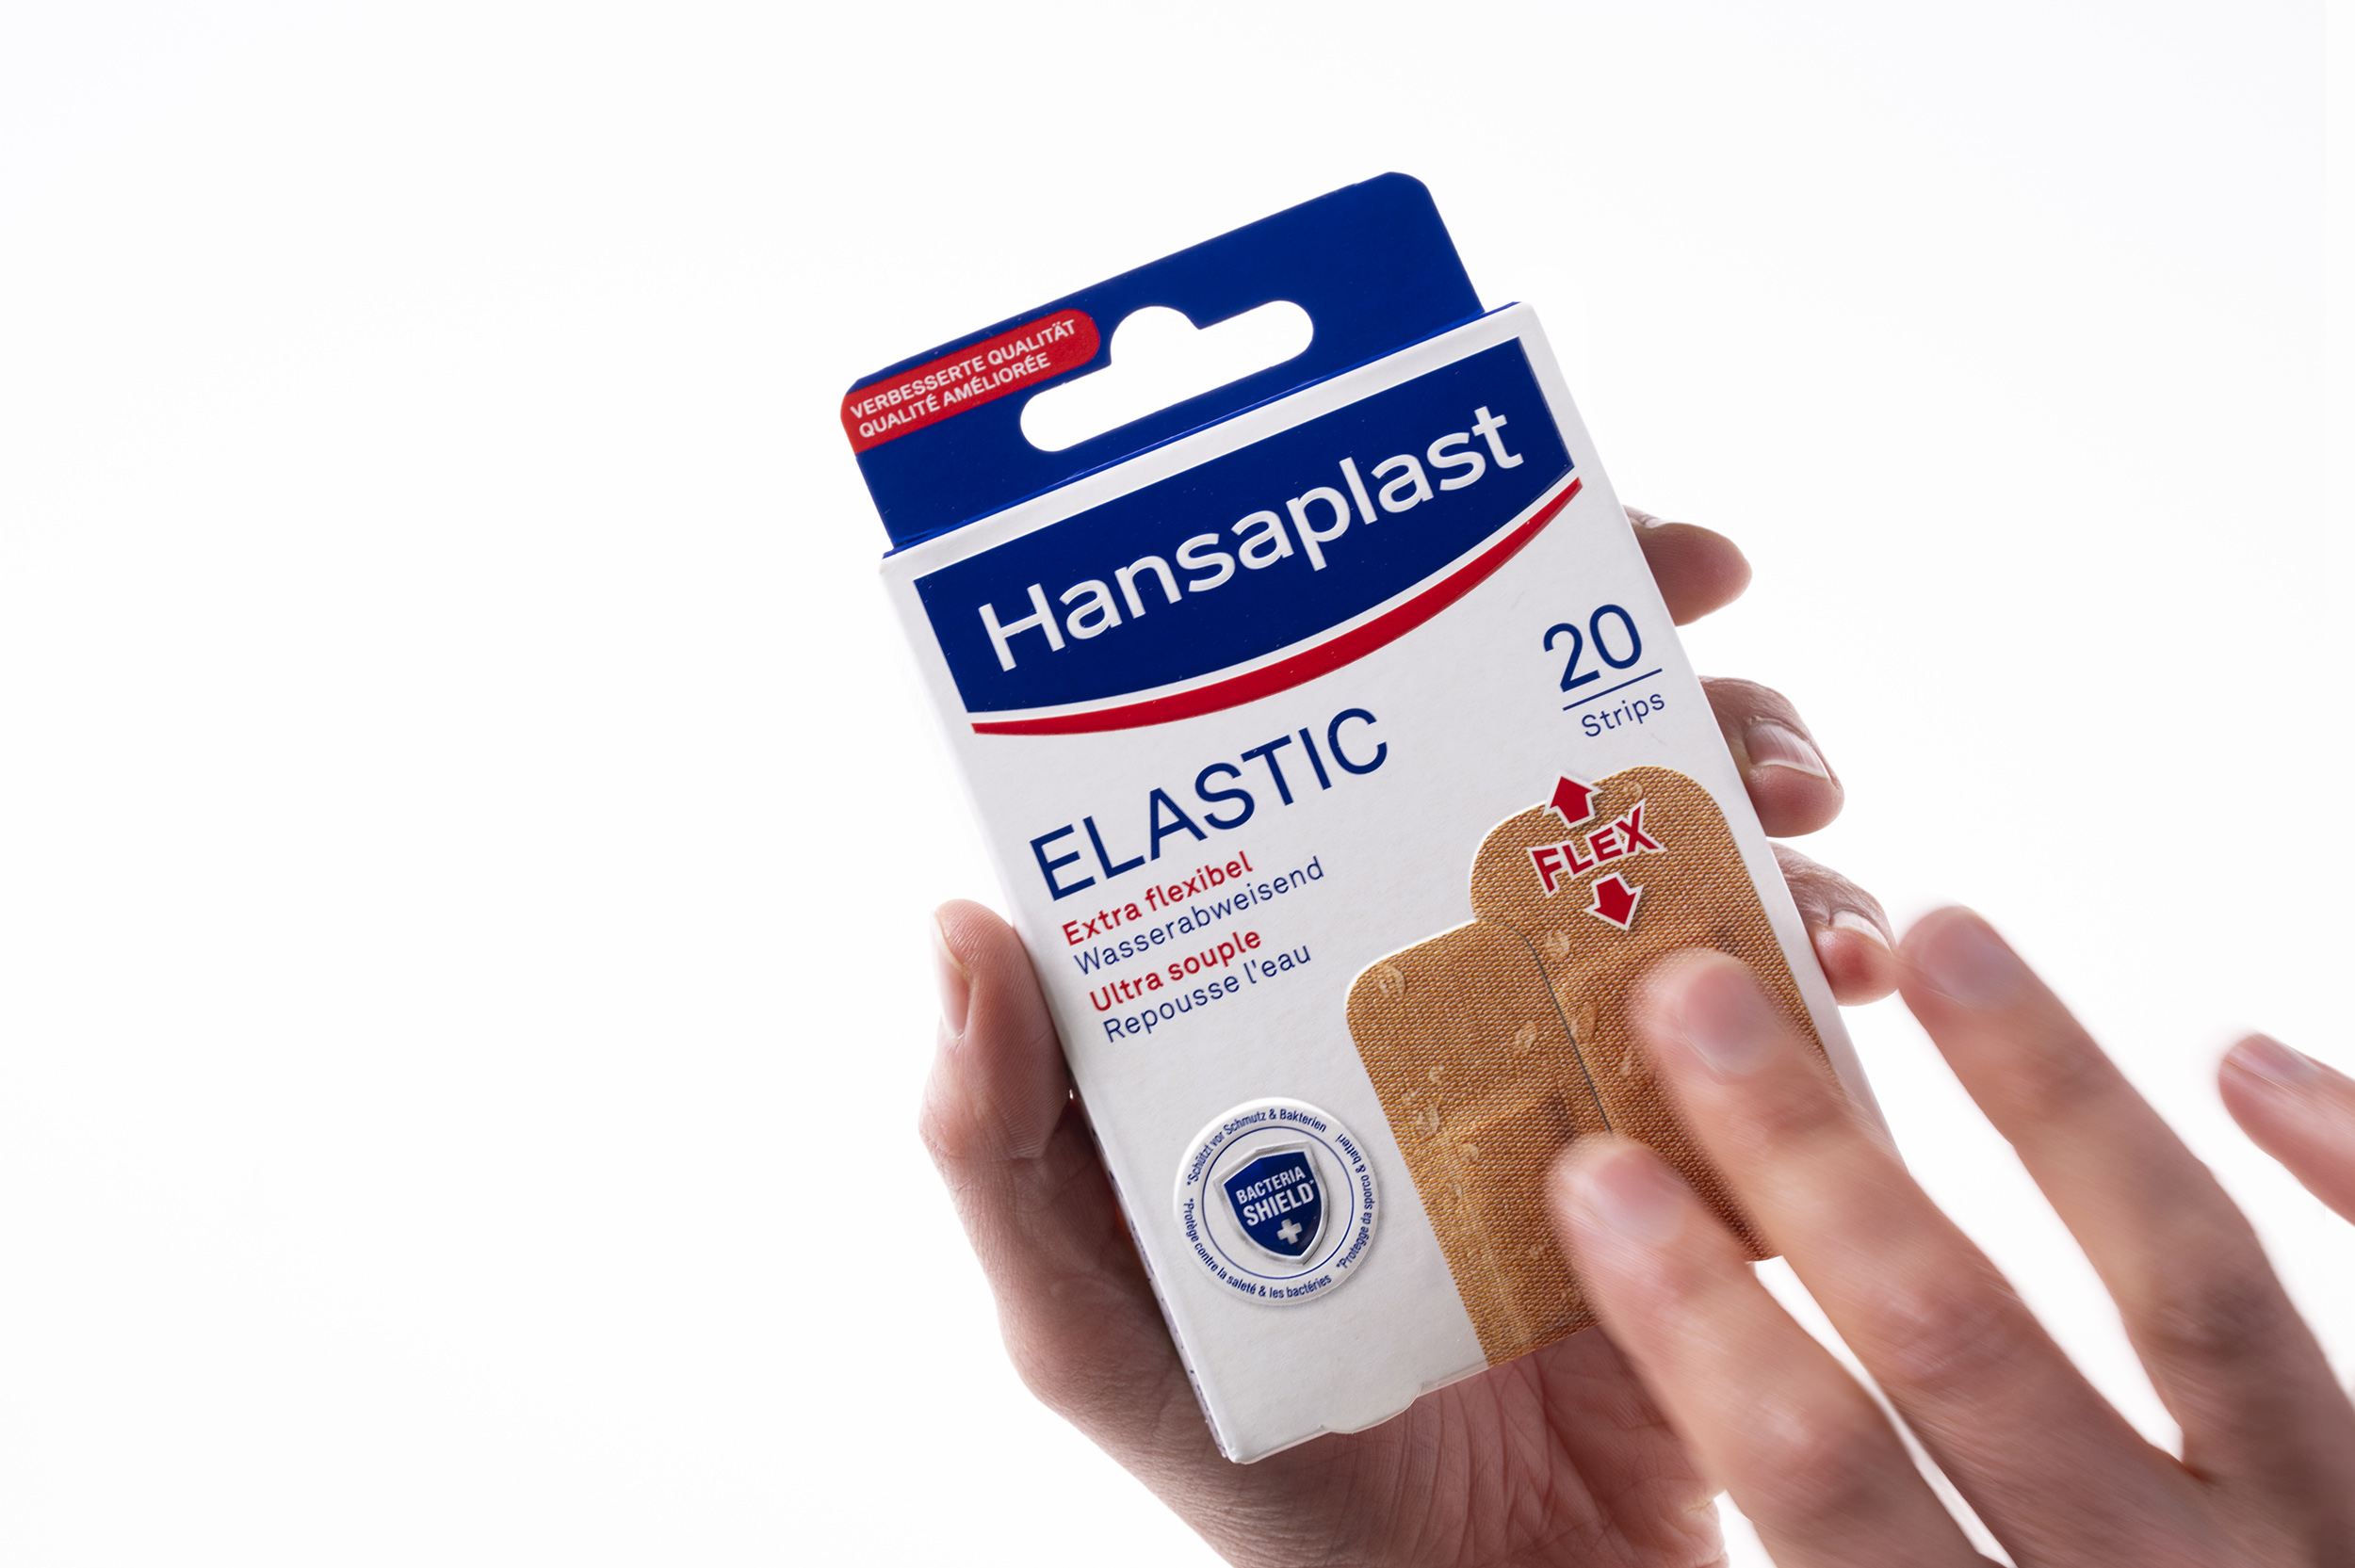 Hansaplast brand relaunch